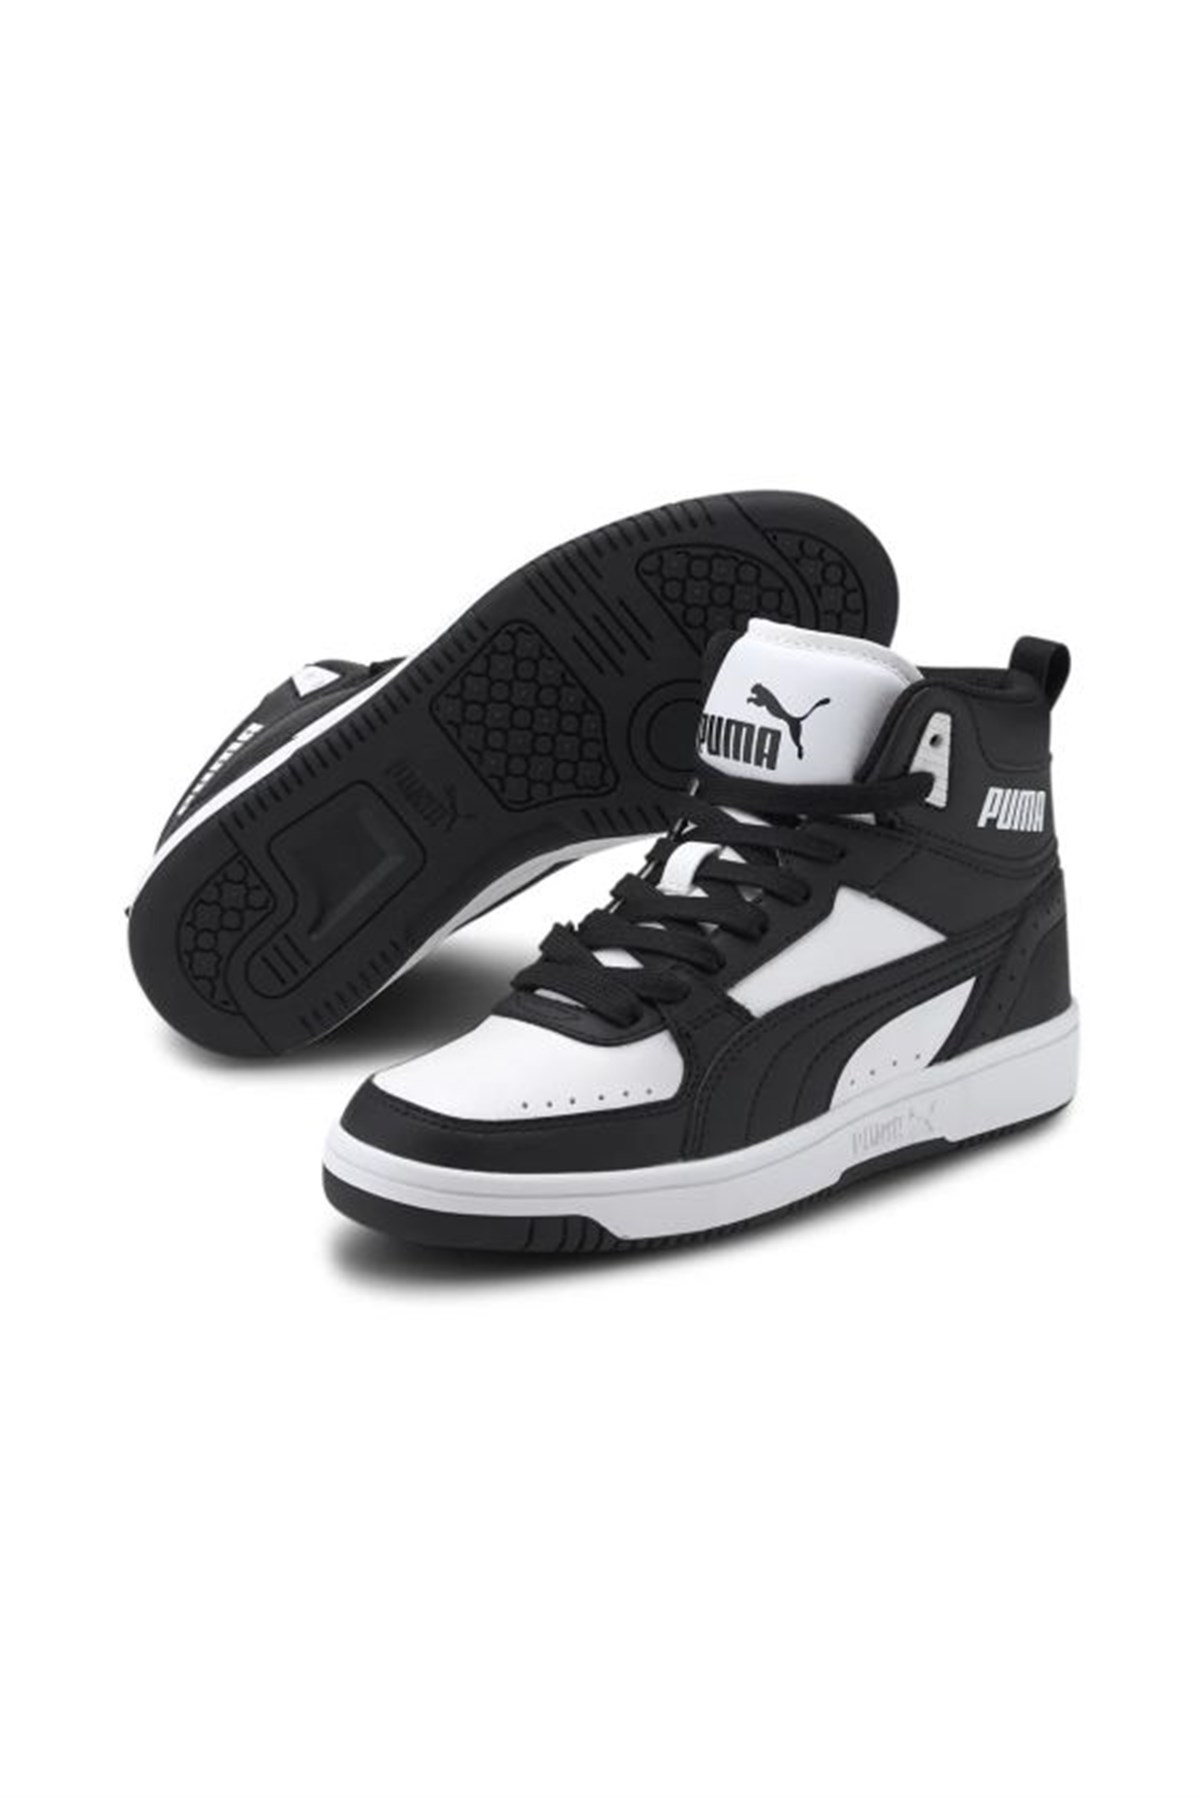 Puma Rebound Joy Kadın Boğazlı Sneaker Günlük Ayakkabı 37468701